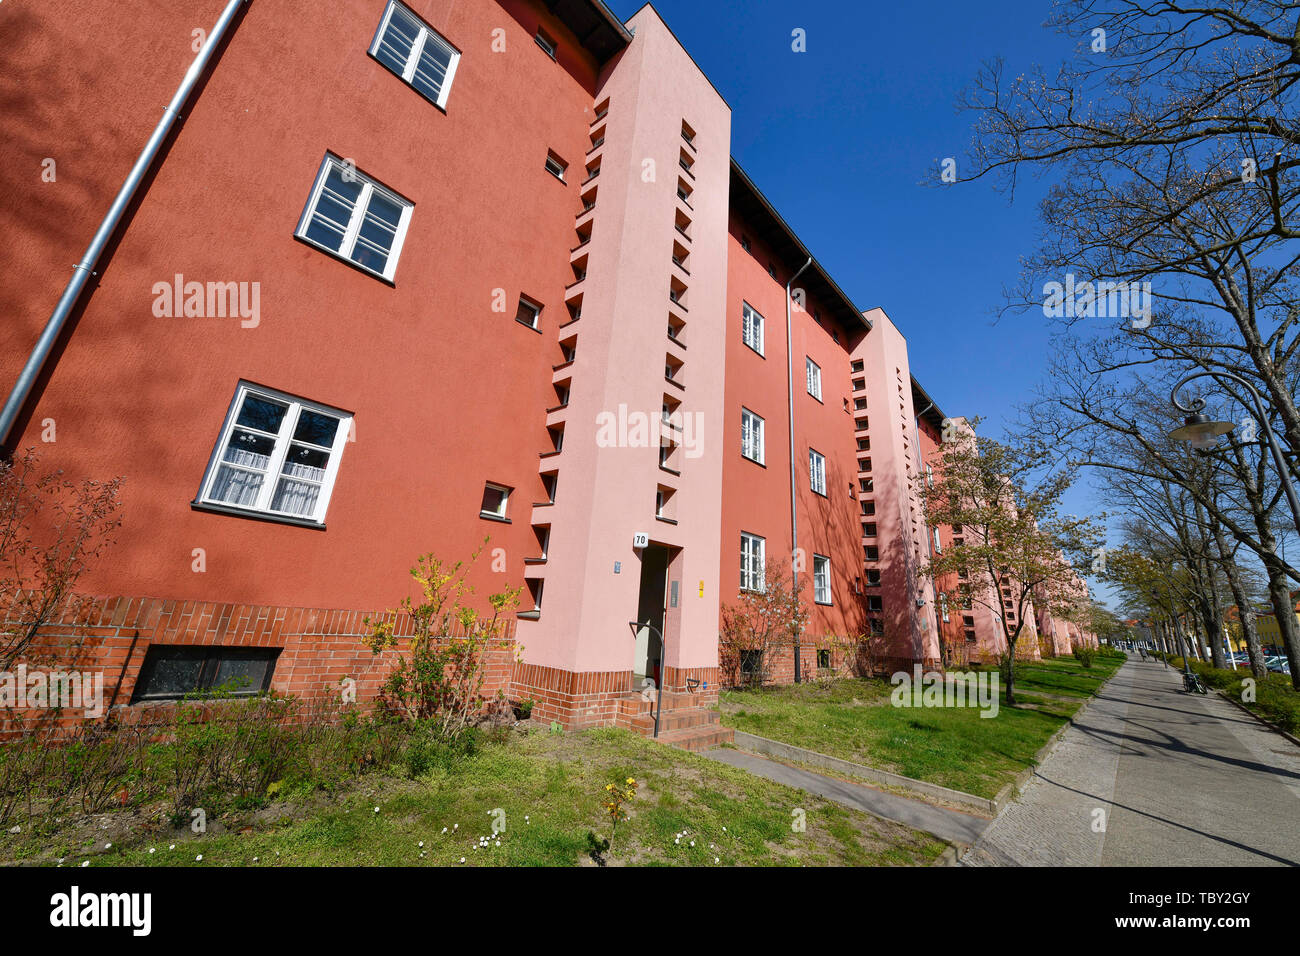 Casa di abitazione, del Fritz Reuter avenue, insediamento a ferro di cavallo, Britz, Neukölln, Berlino, Germania, Wohnhaus, Fritz-Reuter-Allee, Hufeisensiedlung, Deutsch Foto Stock